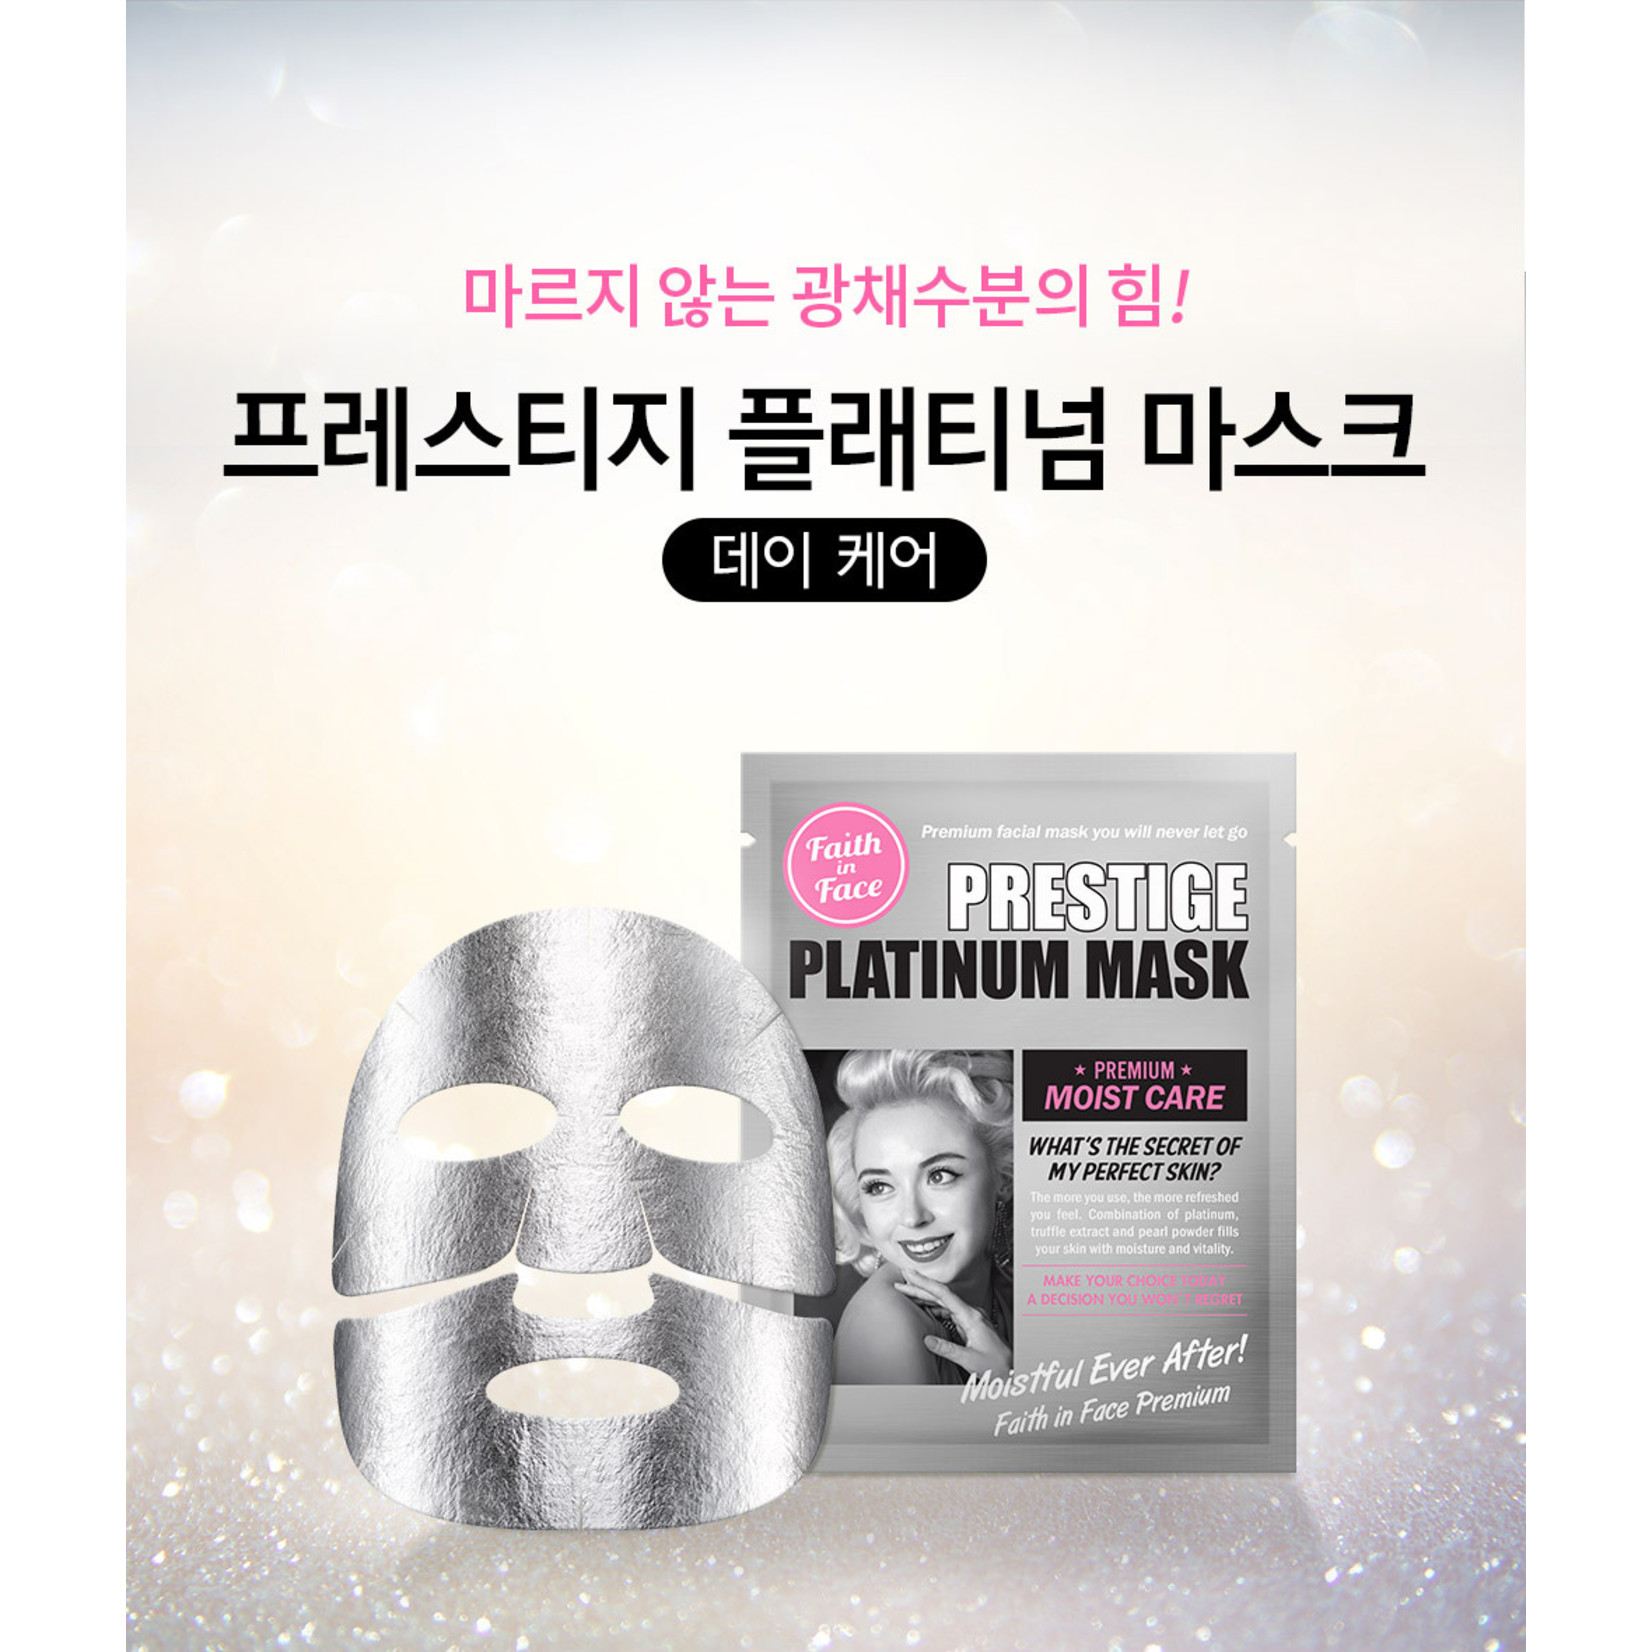 Faith in Face Prestige Platinum Mask